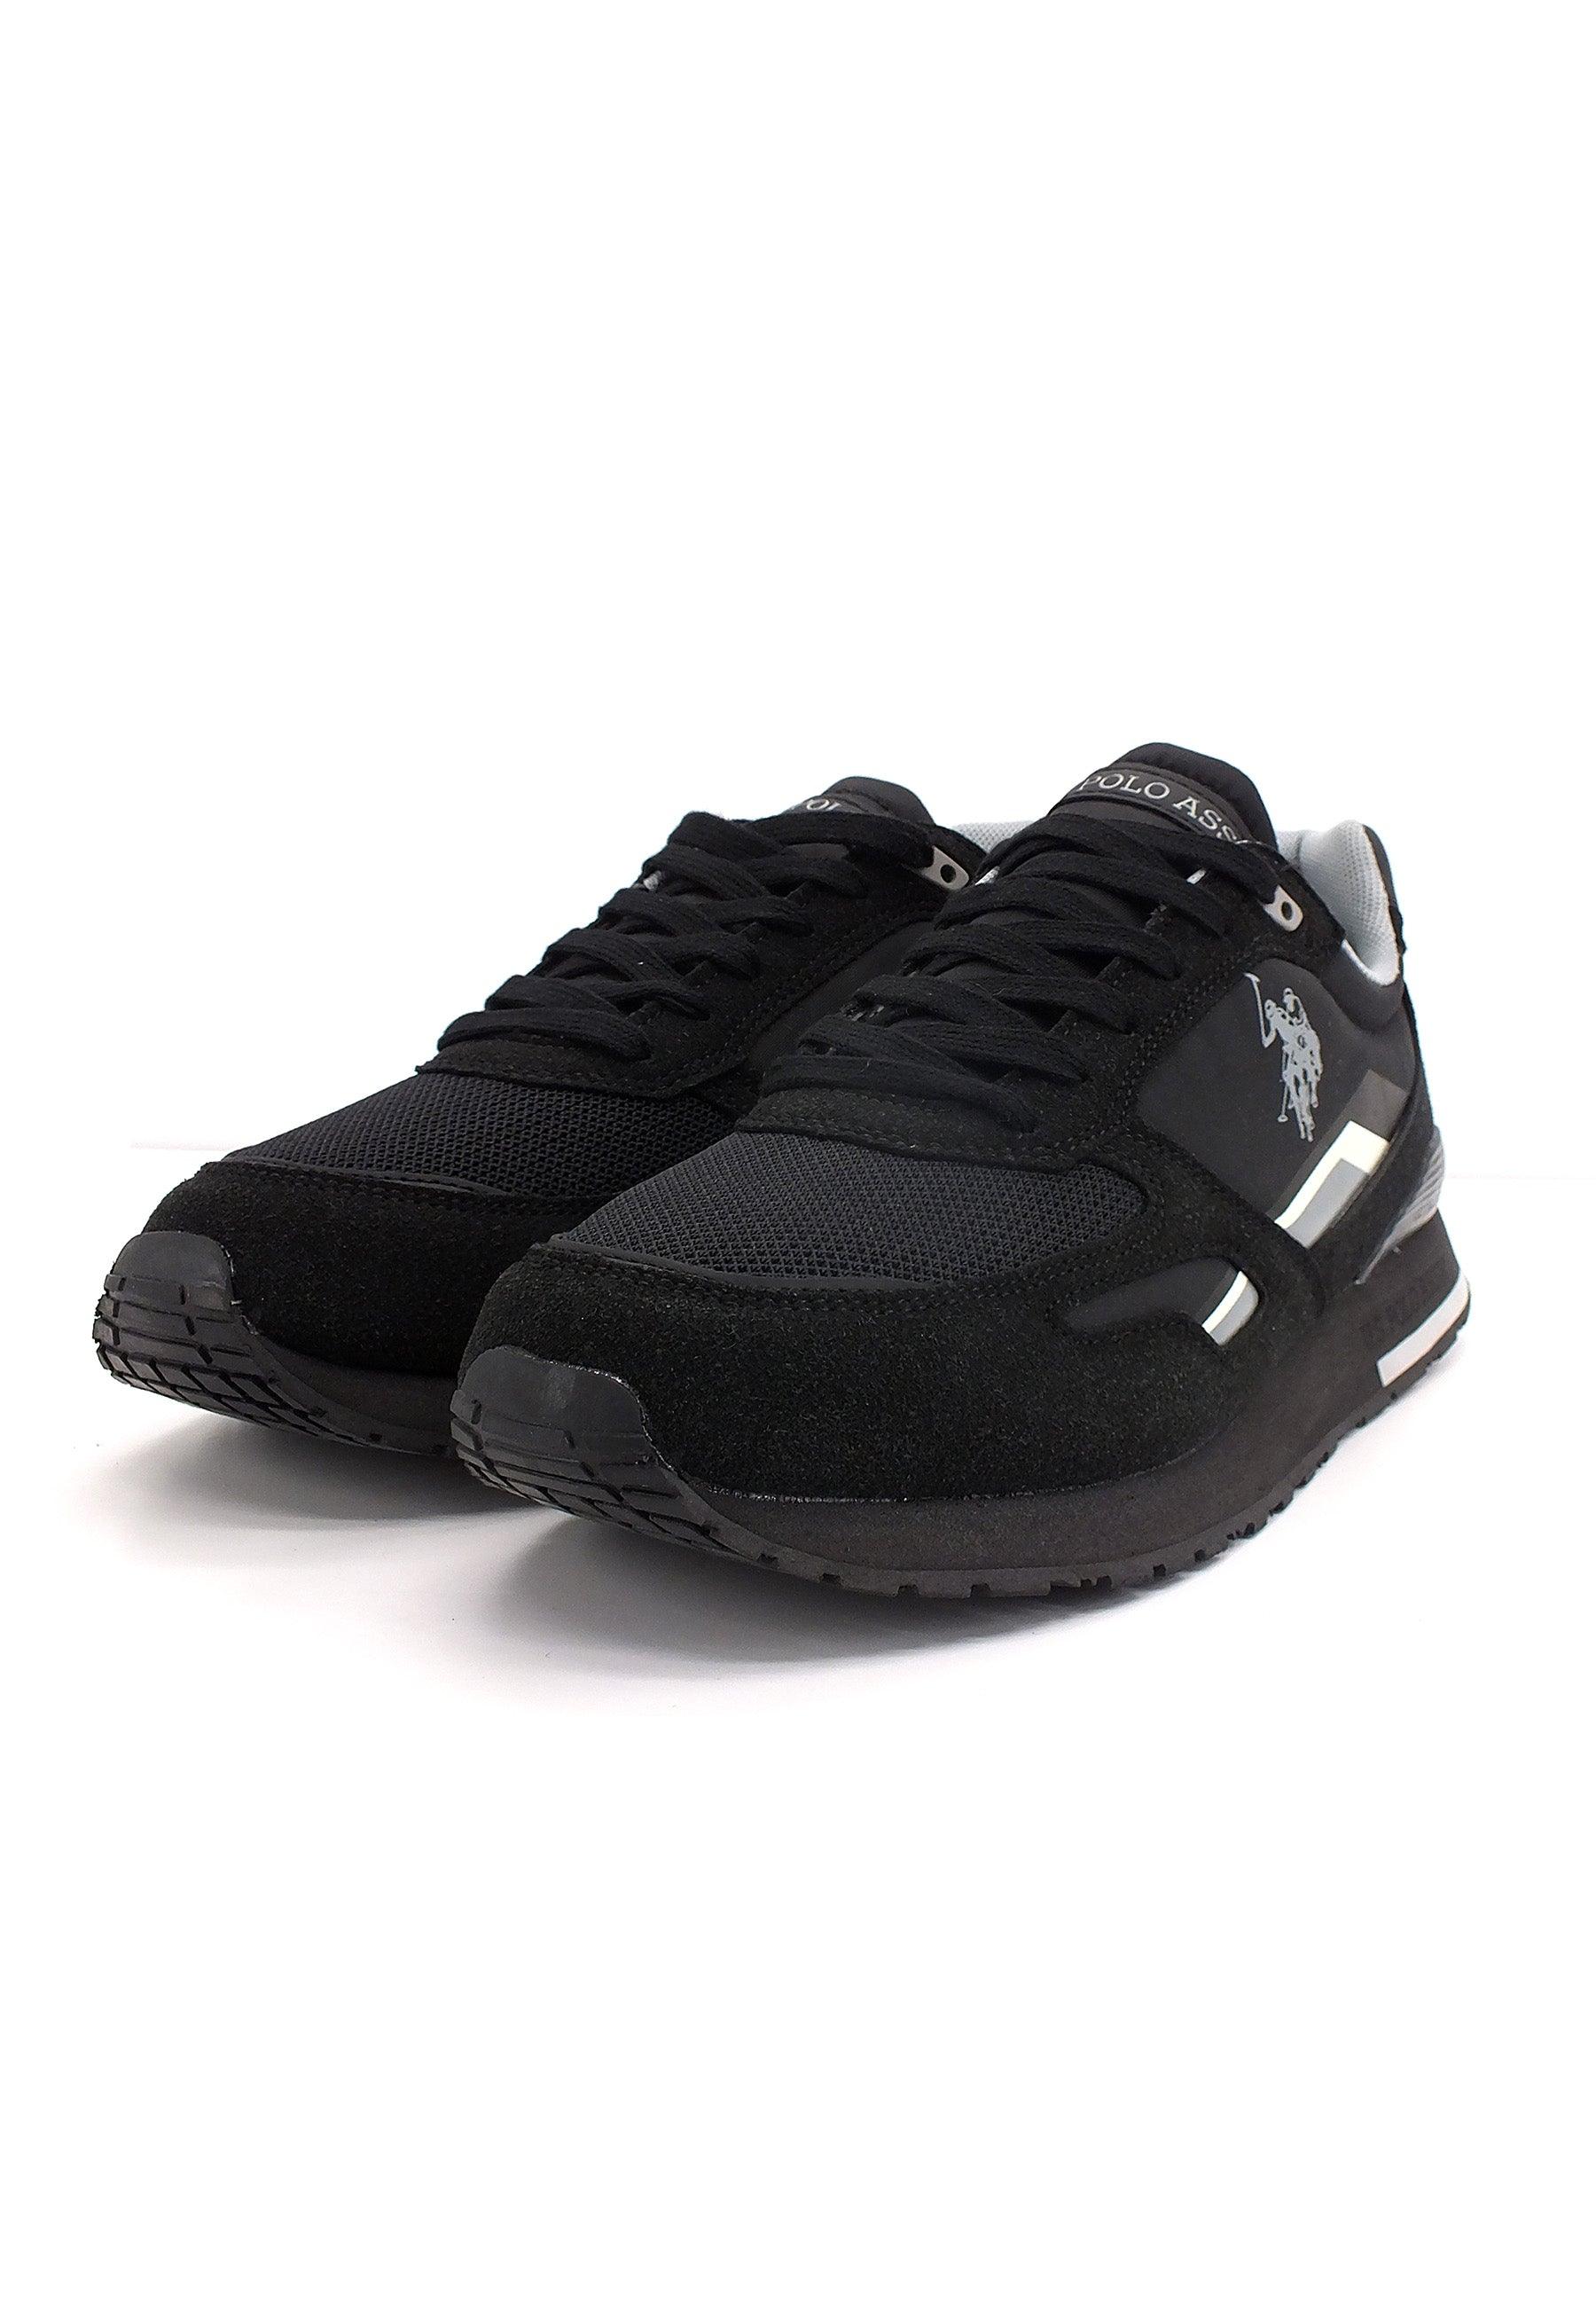 U.S. POLO ASSN. Sneaker Uomo Eco Suede Black TABRY001B - Sandrini Calzature e Abbigliamento